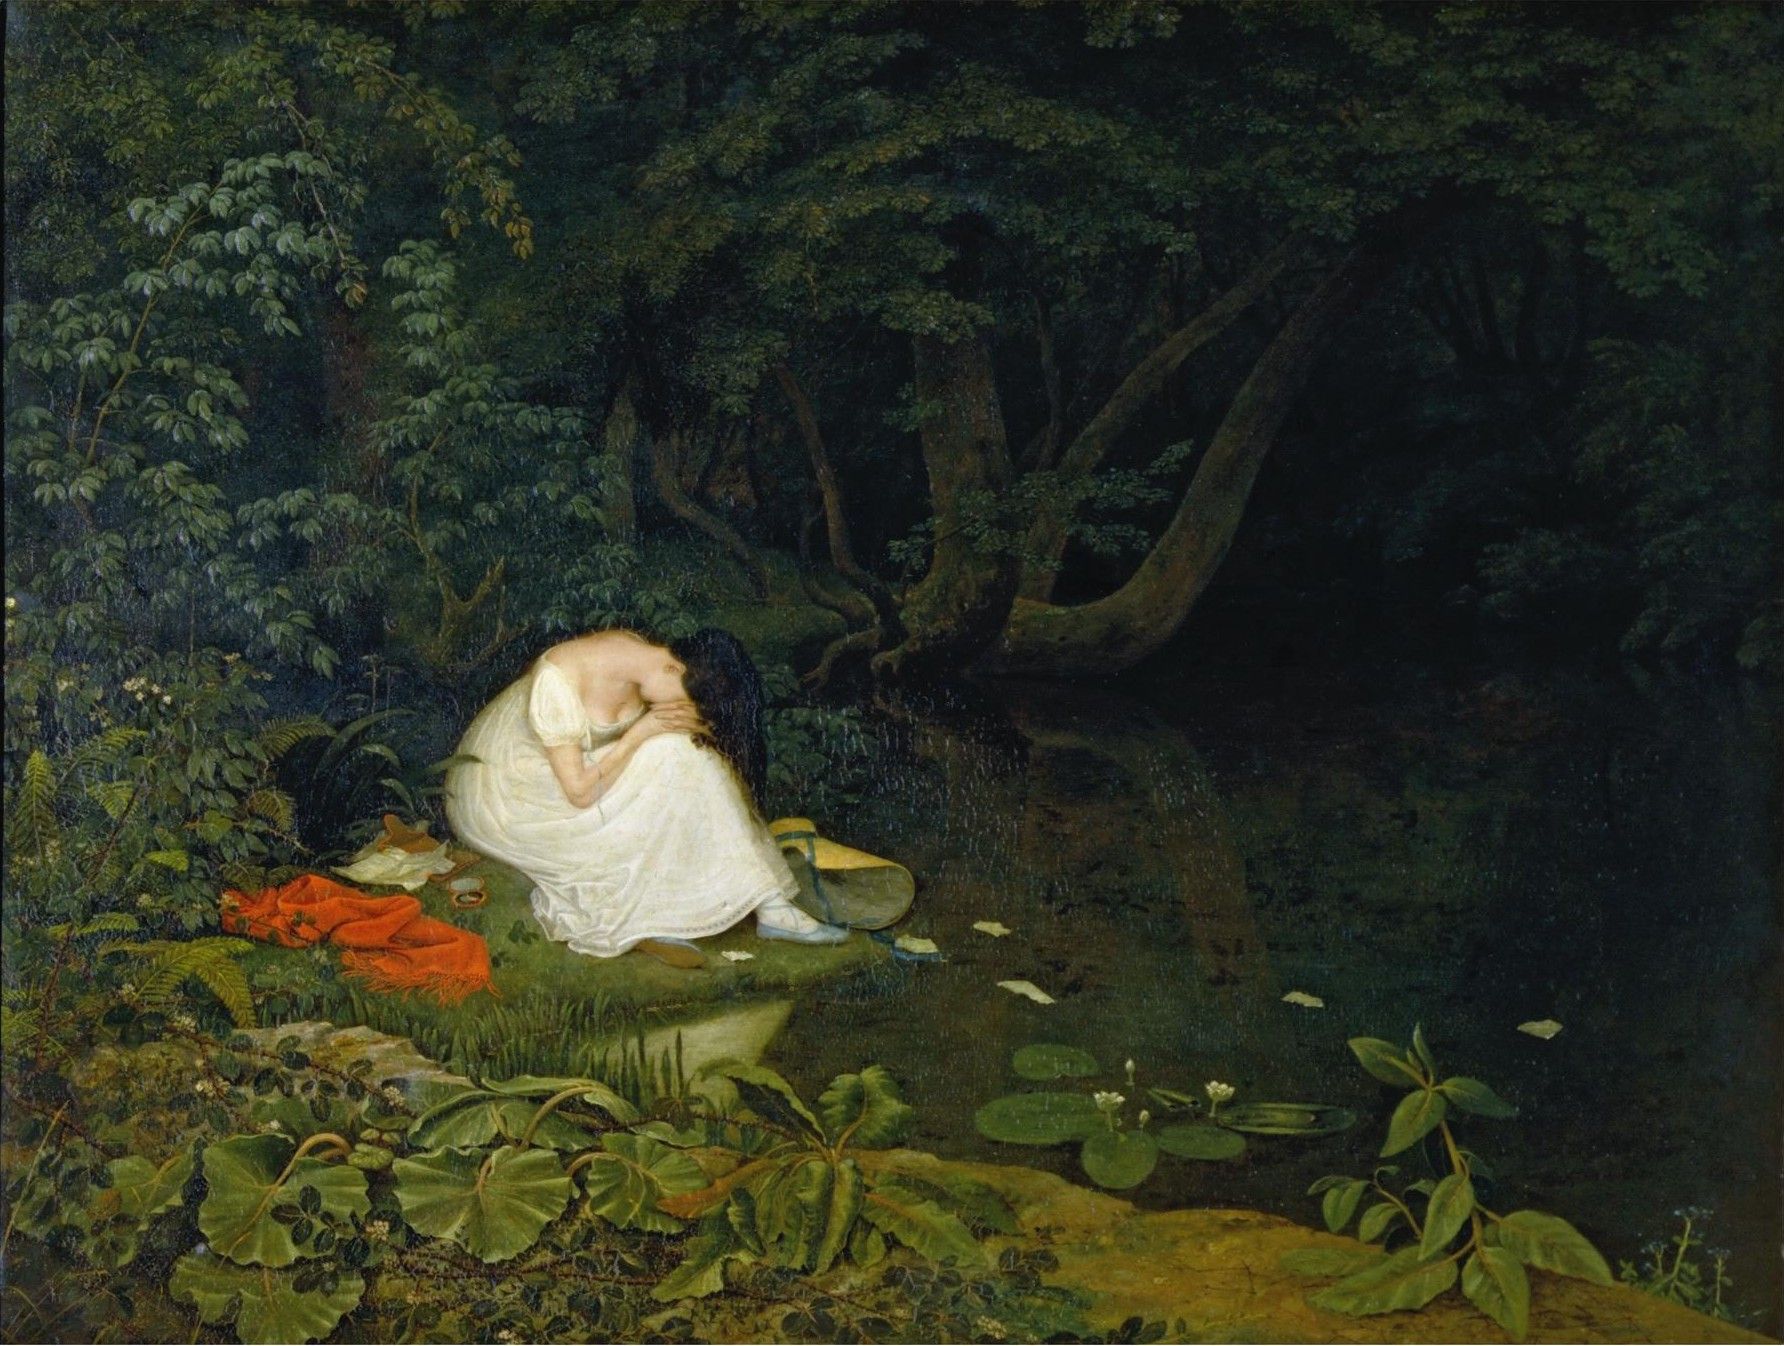 Amor decepcionado by Francis Danby - 1821 - 62.8 x 81.2 cm Museo de Victoria y Alberto